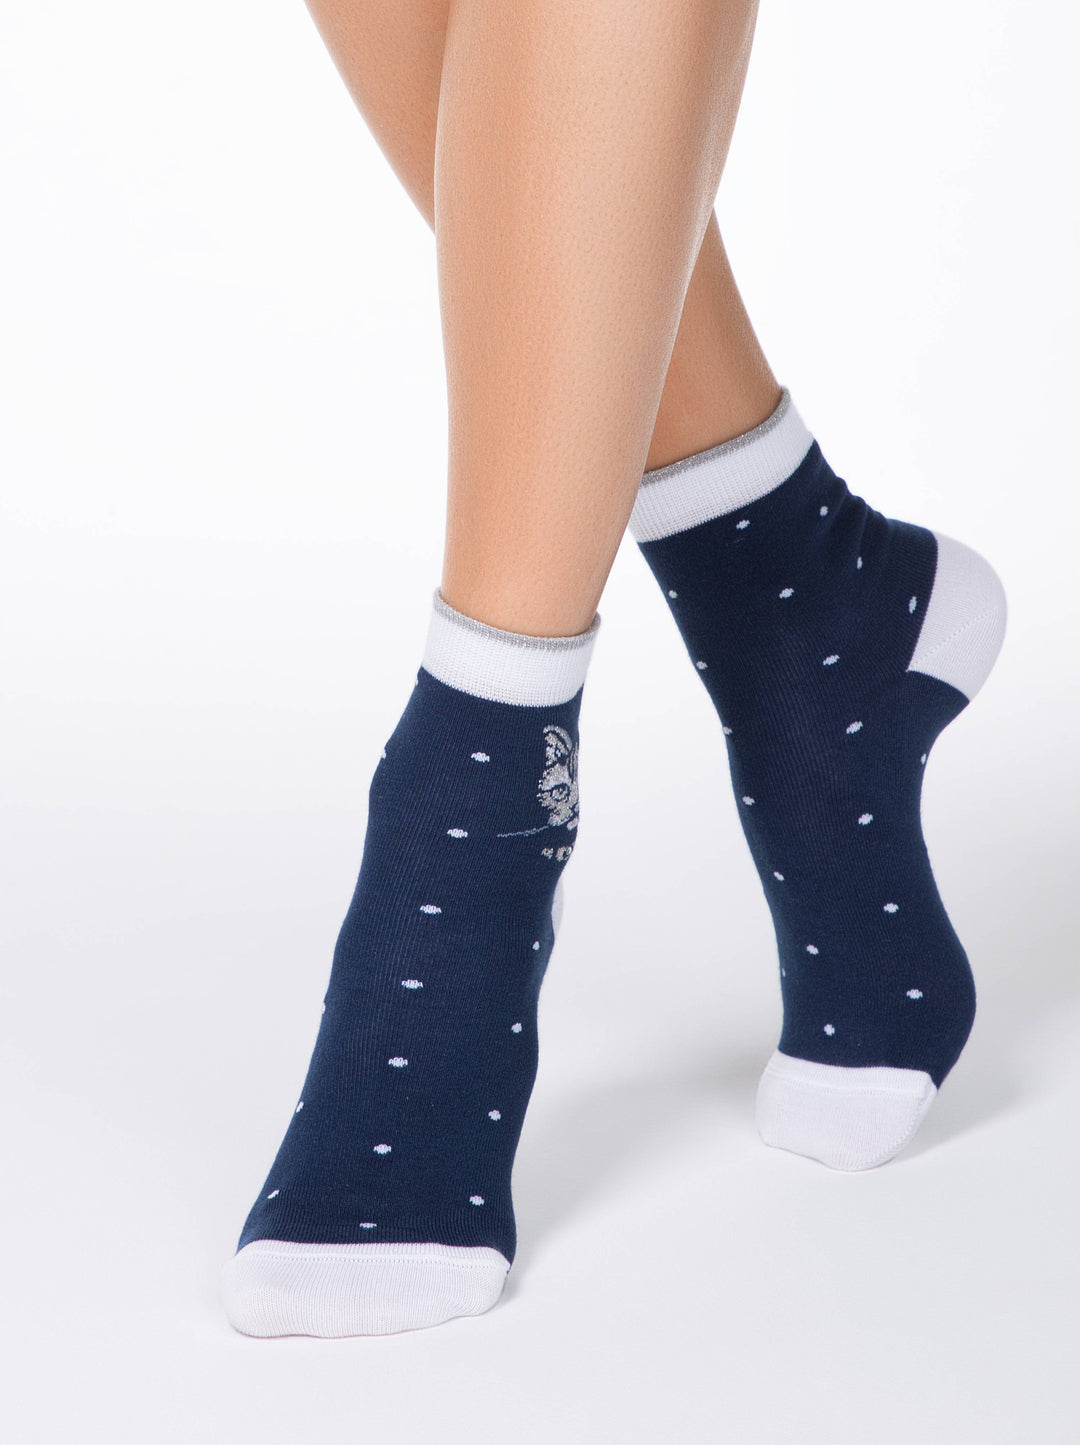 Conte Elegant Cotton Socks (2 pairs) - Lady Cat